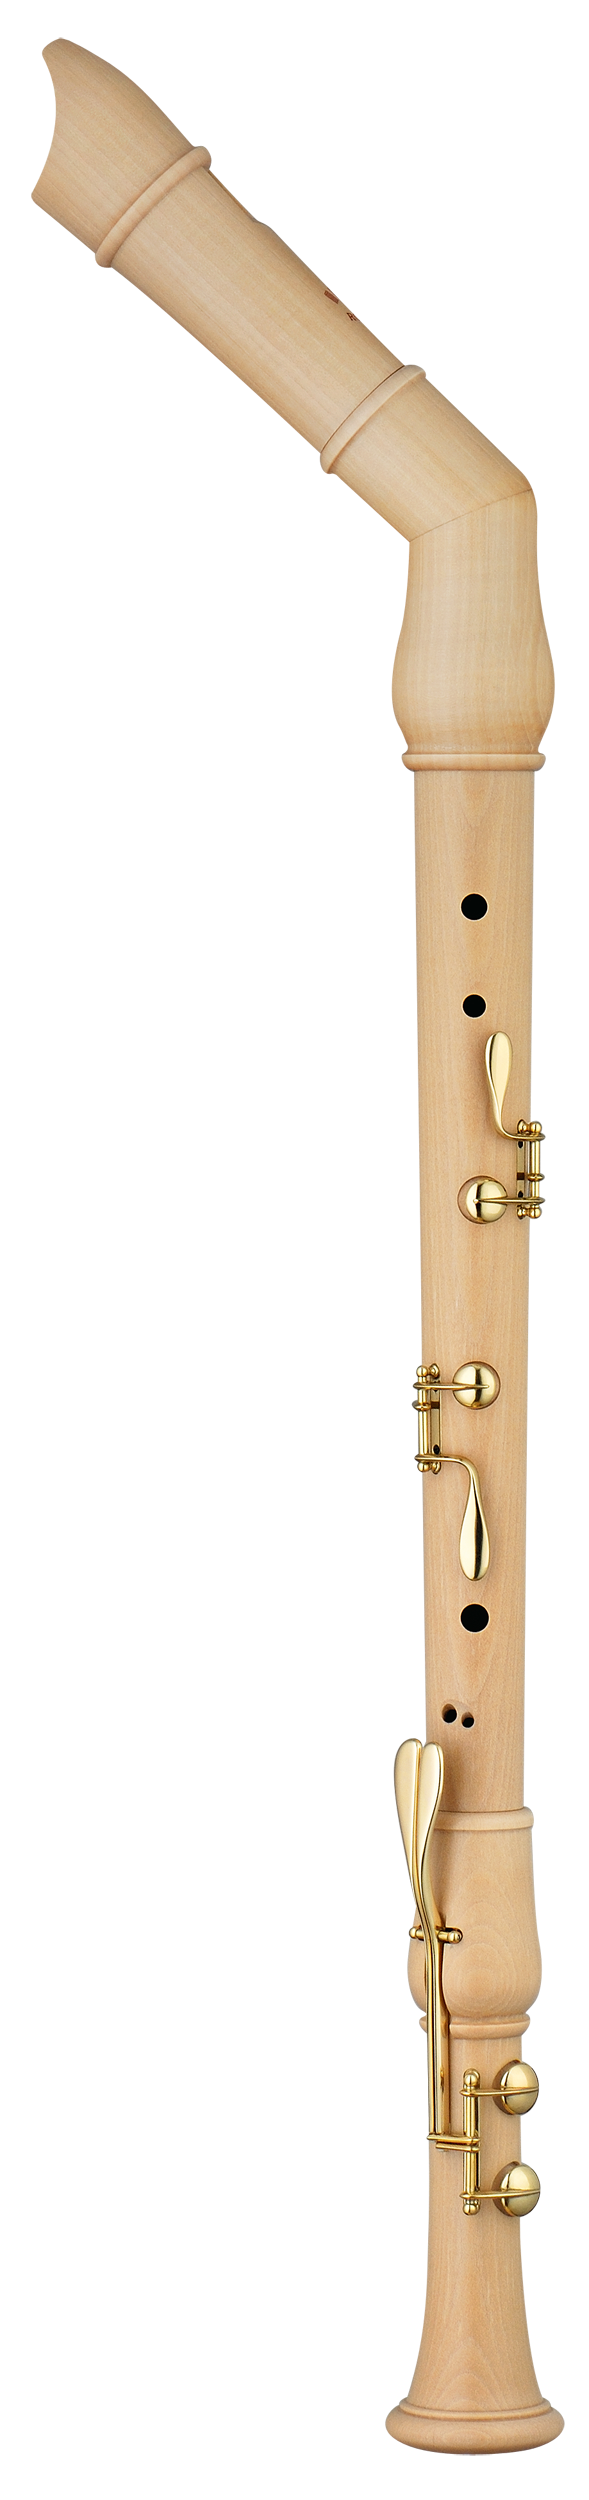 Moeck: flauto dolce in legno al miglior prezzo online